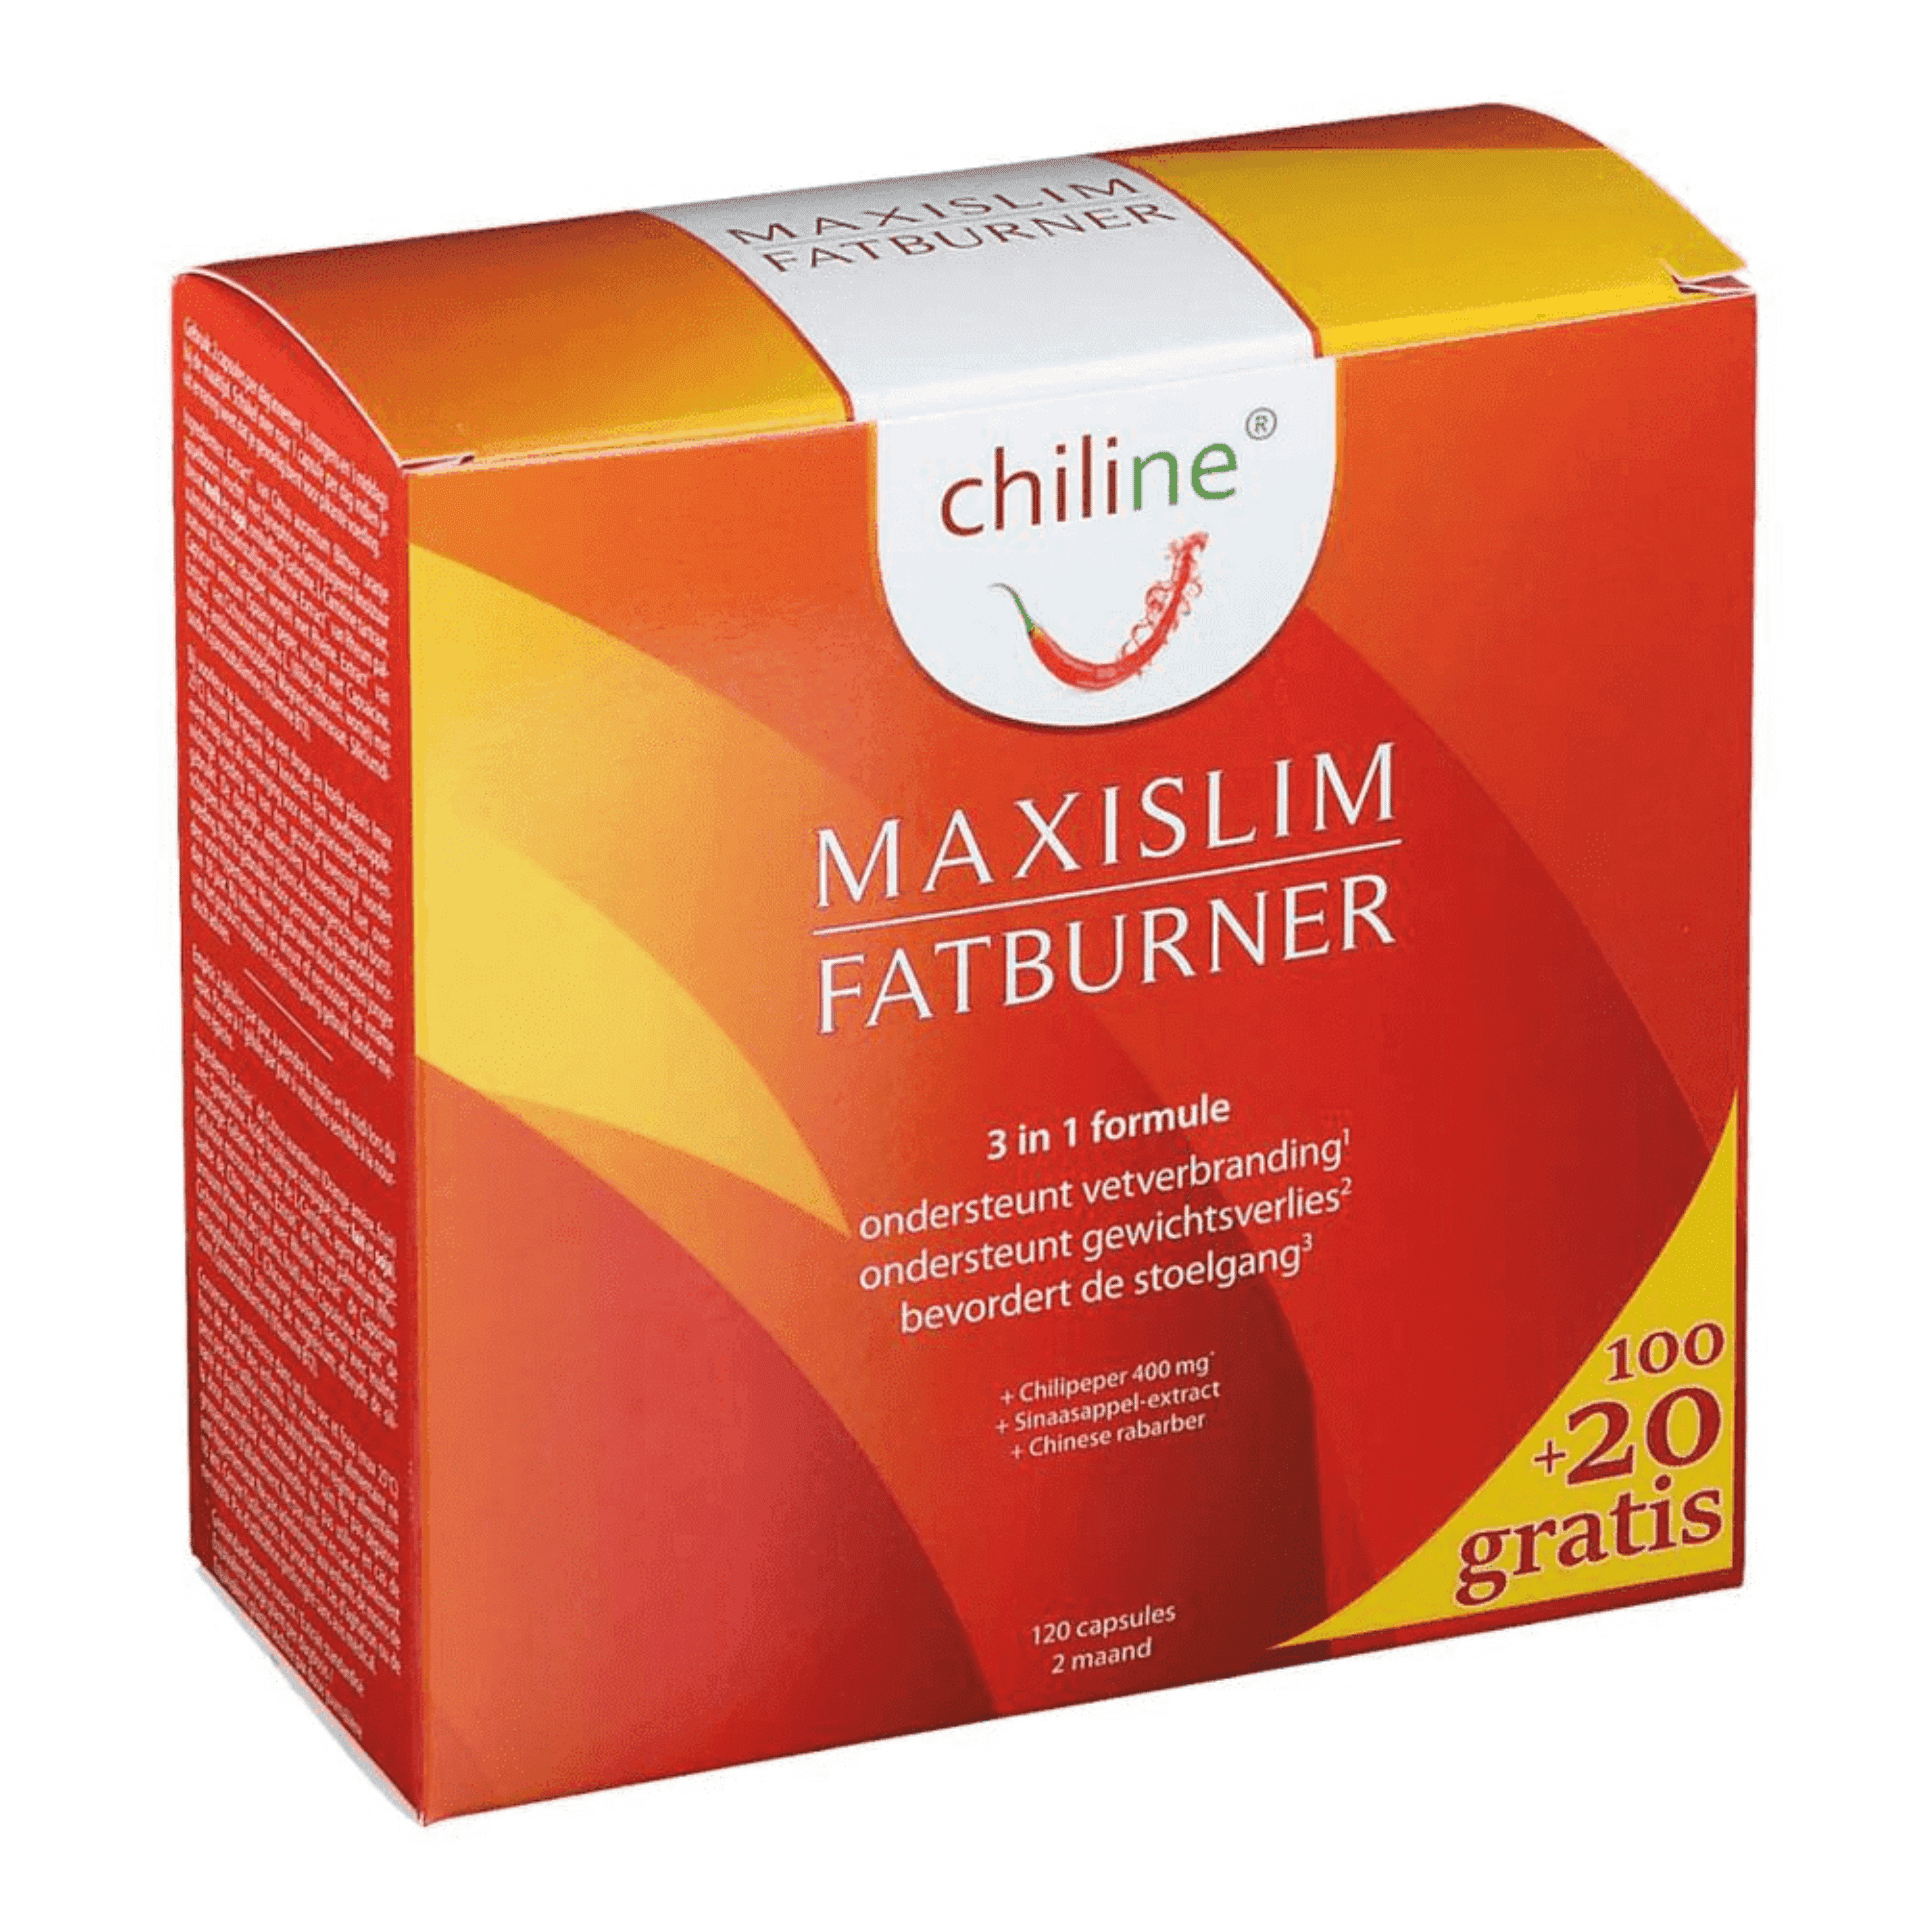 Chiline Maxislim Fatburner 120 capsules